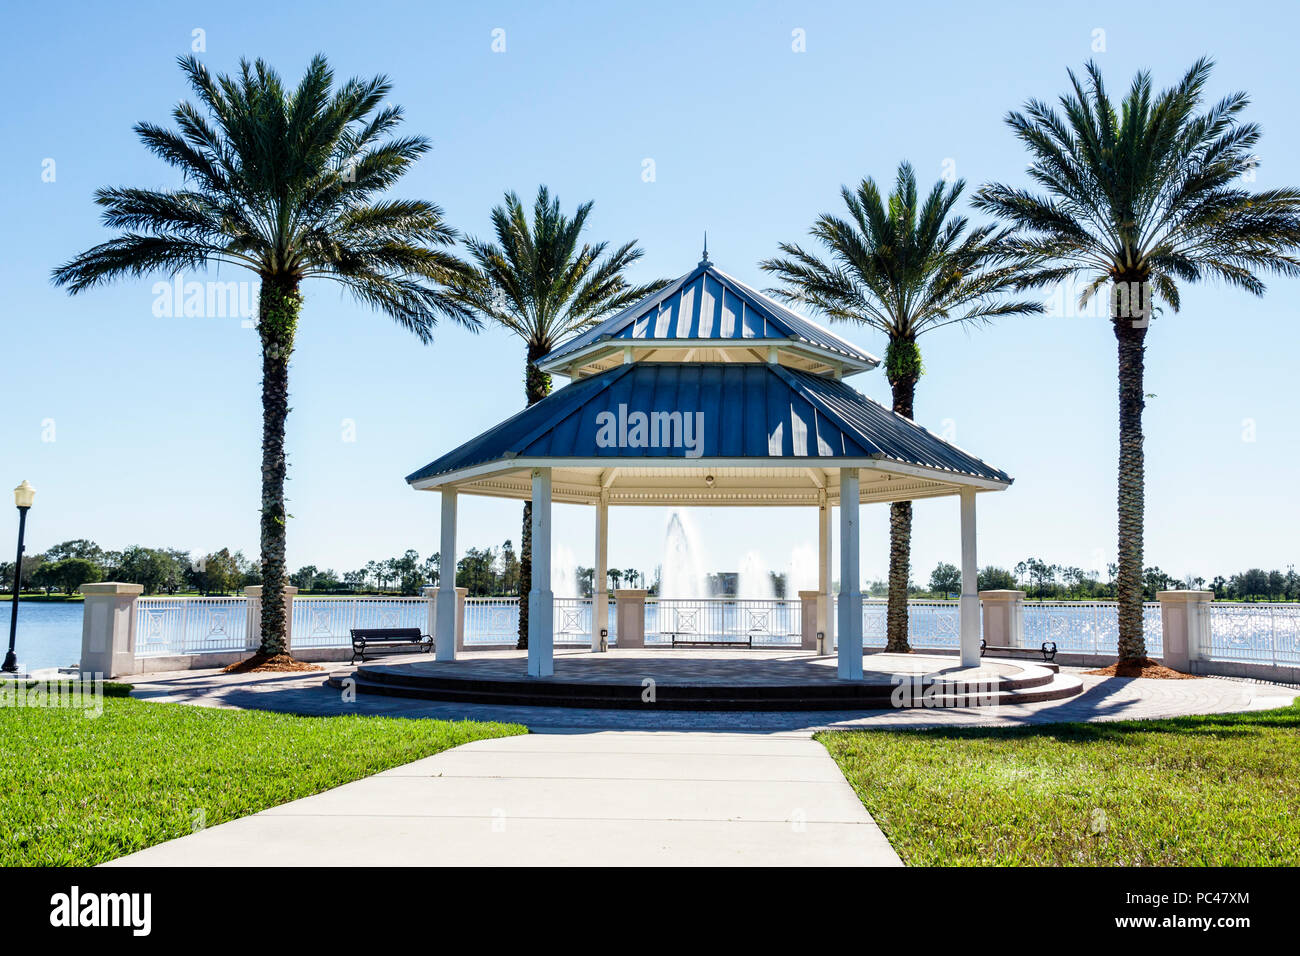 Port Saint Lucie Floride,Tradition,belvédère,lac,parc,palmiers,front de mer,FL171212001 Banque D'Images